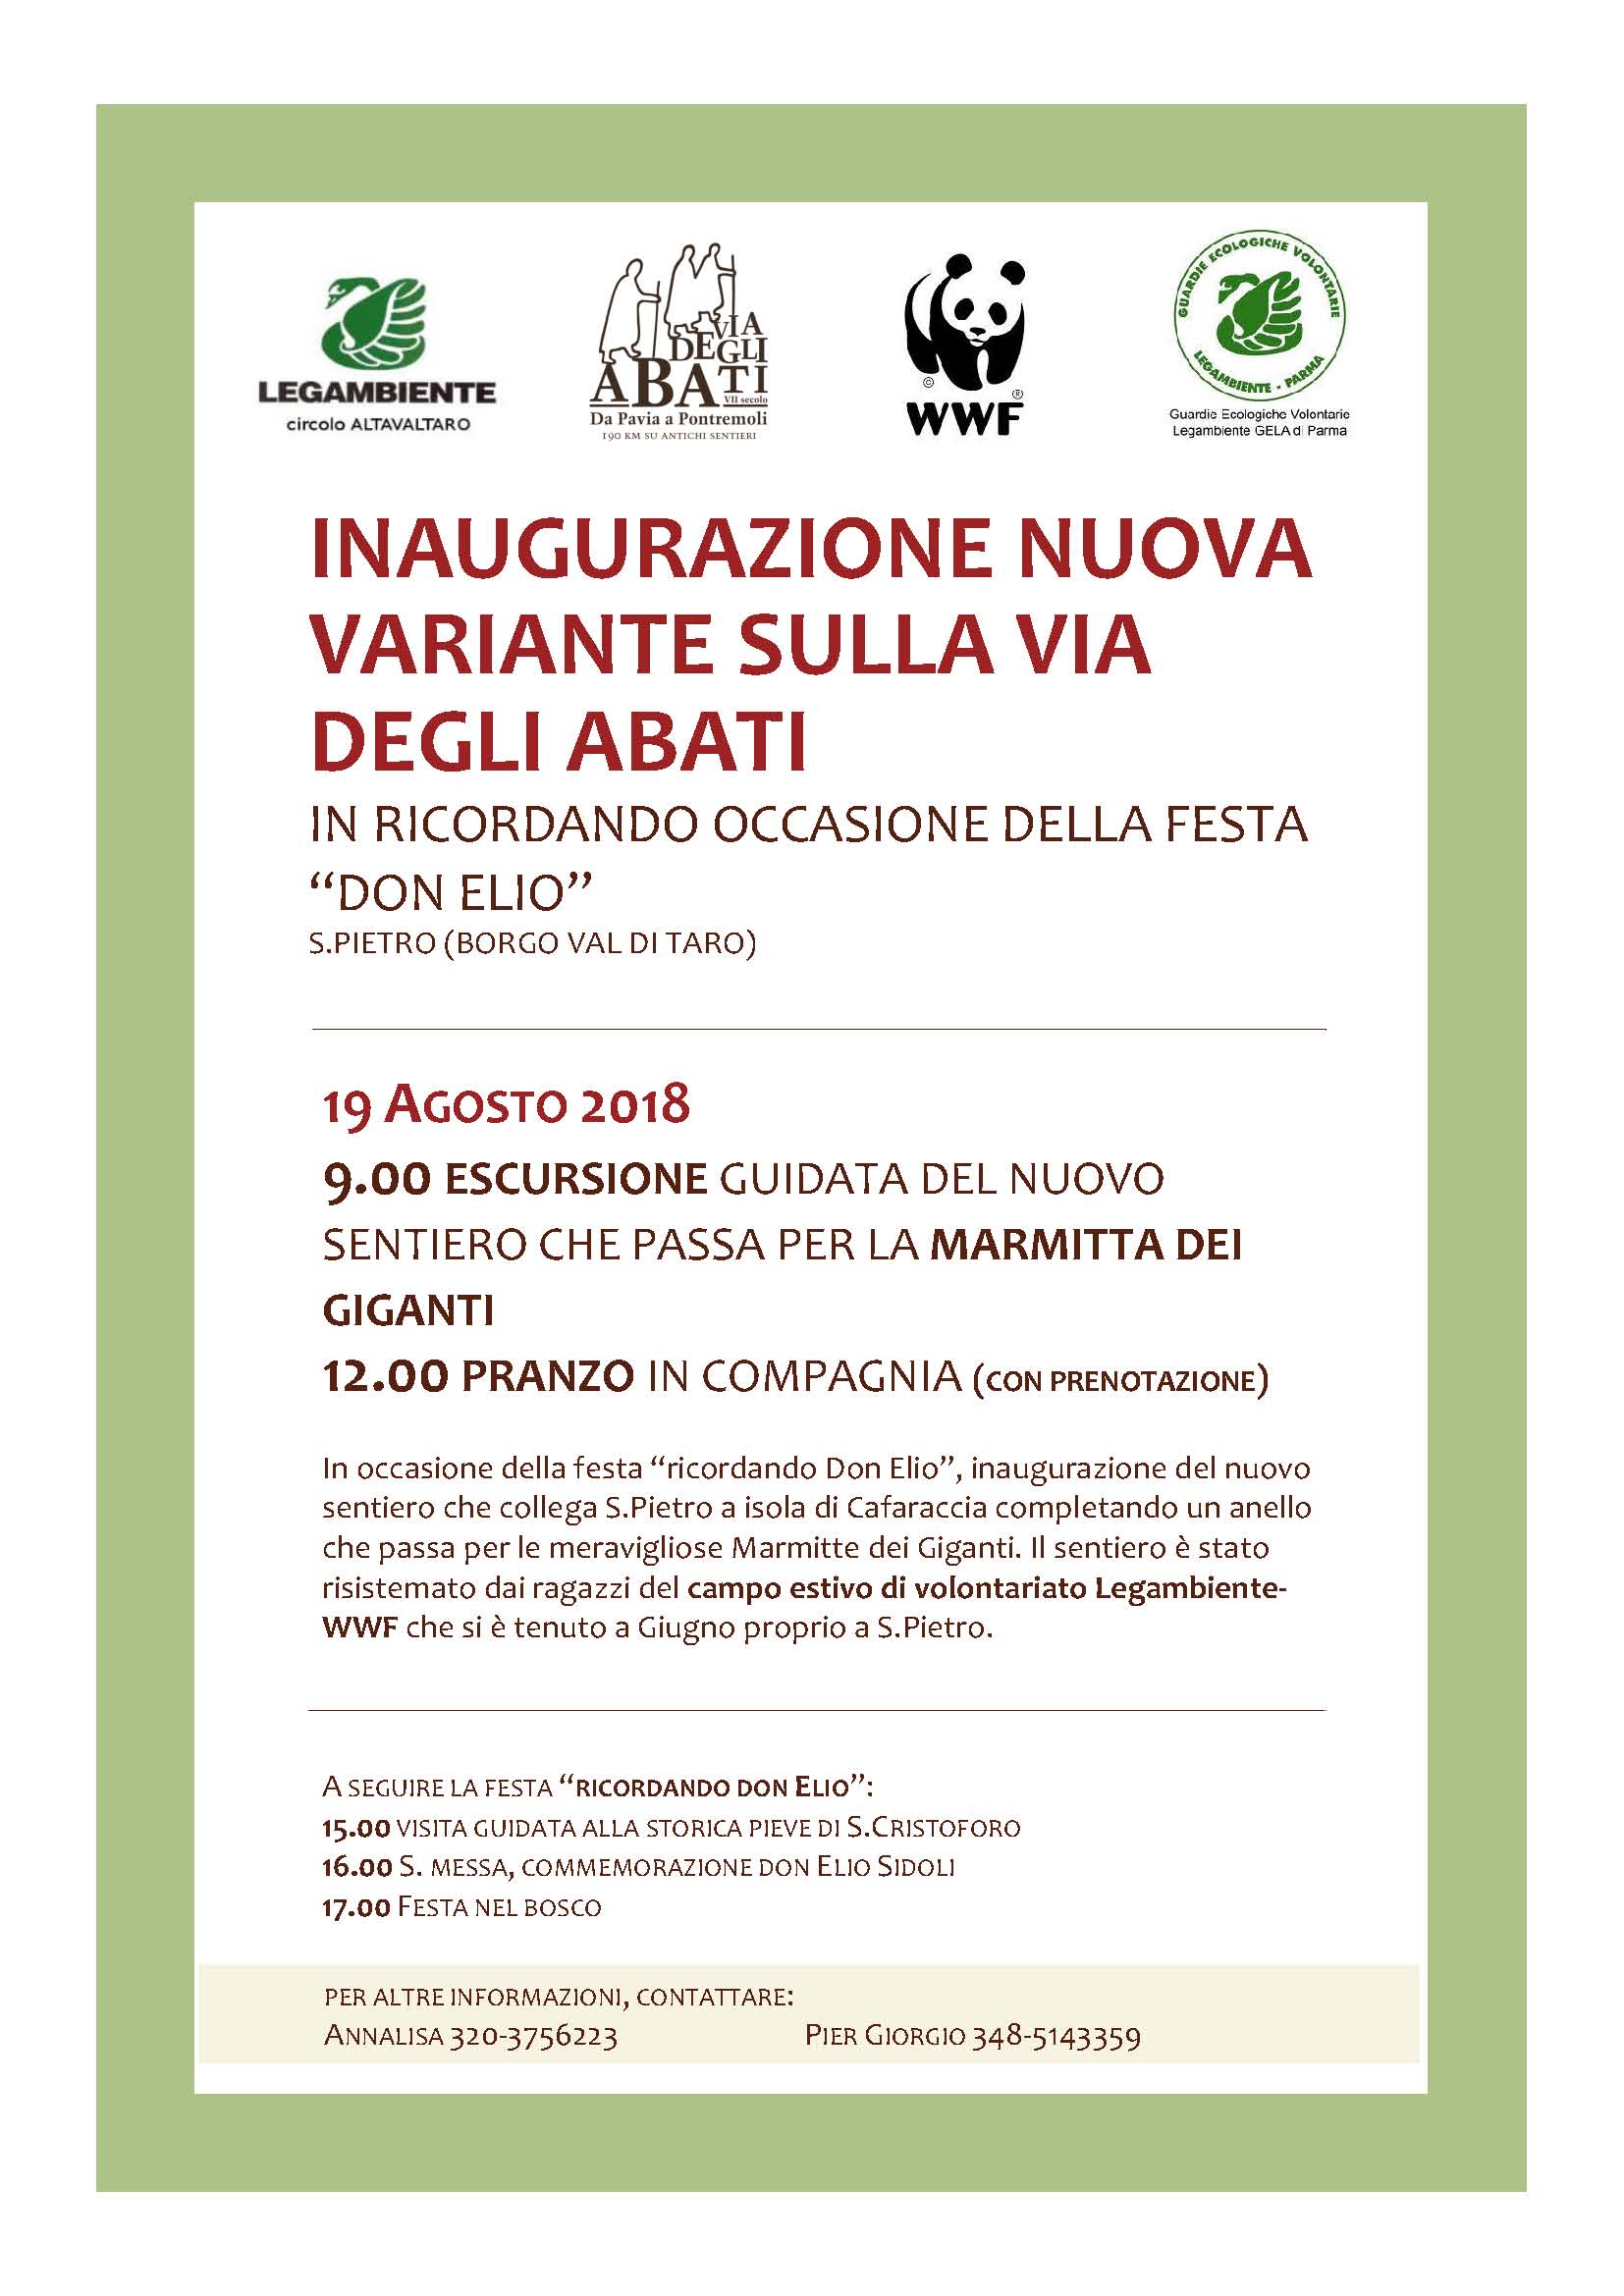 Inaugurazione della nuova variante sulla Via degli Abati (IN OCCASIONE DELLA FESTA IN RICORDO DI “DON ELIO”) - 9 agosto 2018 San Pietro di Borgotaro (Parma) 